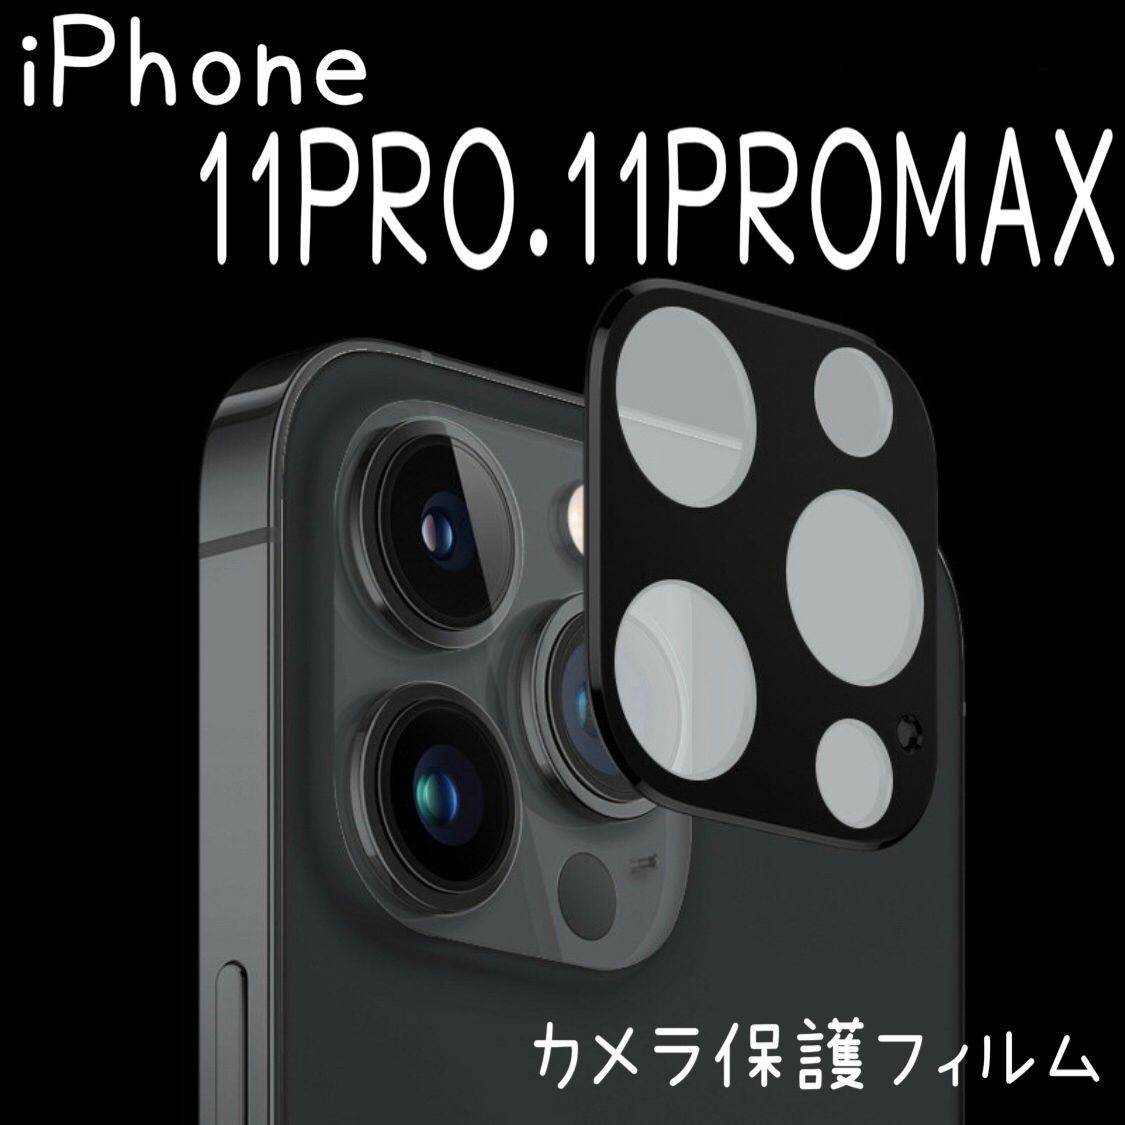 カメラカバー レンズ保護 ガラスフィルム iPhone11PRO 11PROMAX アイフォンレンズカバー 全面カメラレンズ保護 強化ガラスフィルム  保護フィルム ブラック ゴールド シルバー iPhone11pro 11promax カメラフィルム Yアクセショップ メルカリ